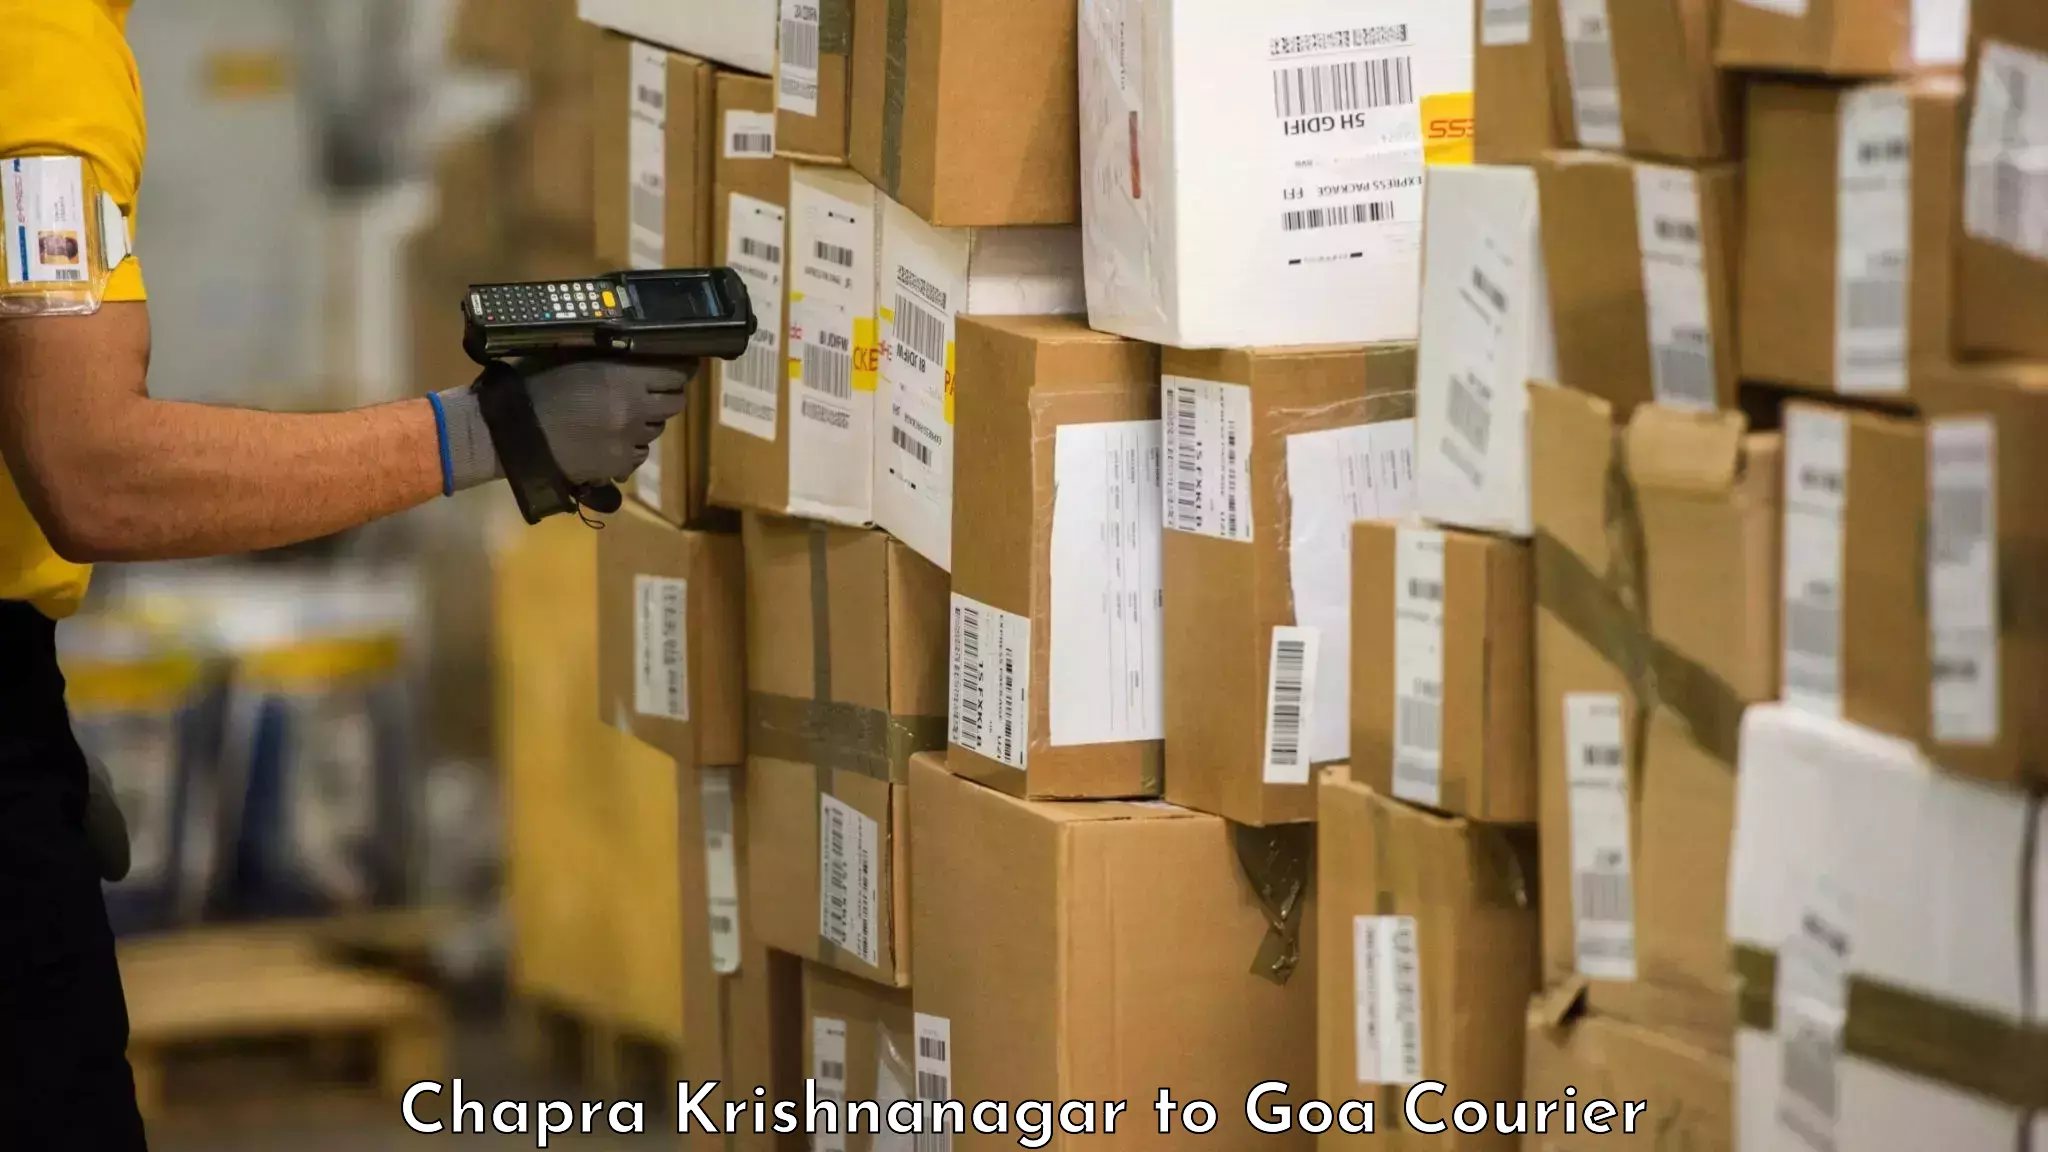 Baggage transport quote Chapra Krishnanagar to Panjim